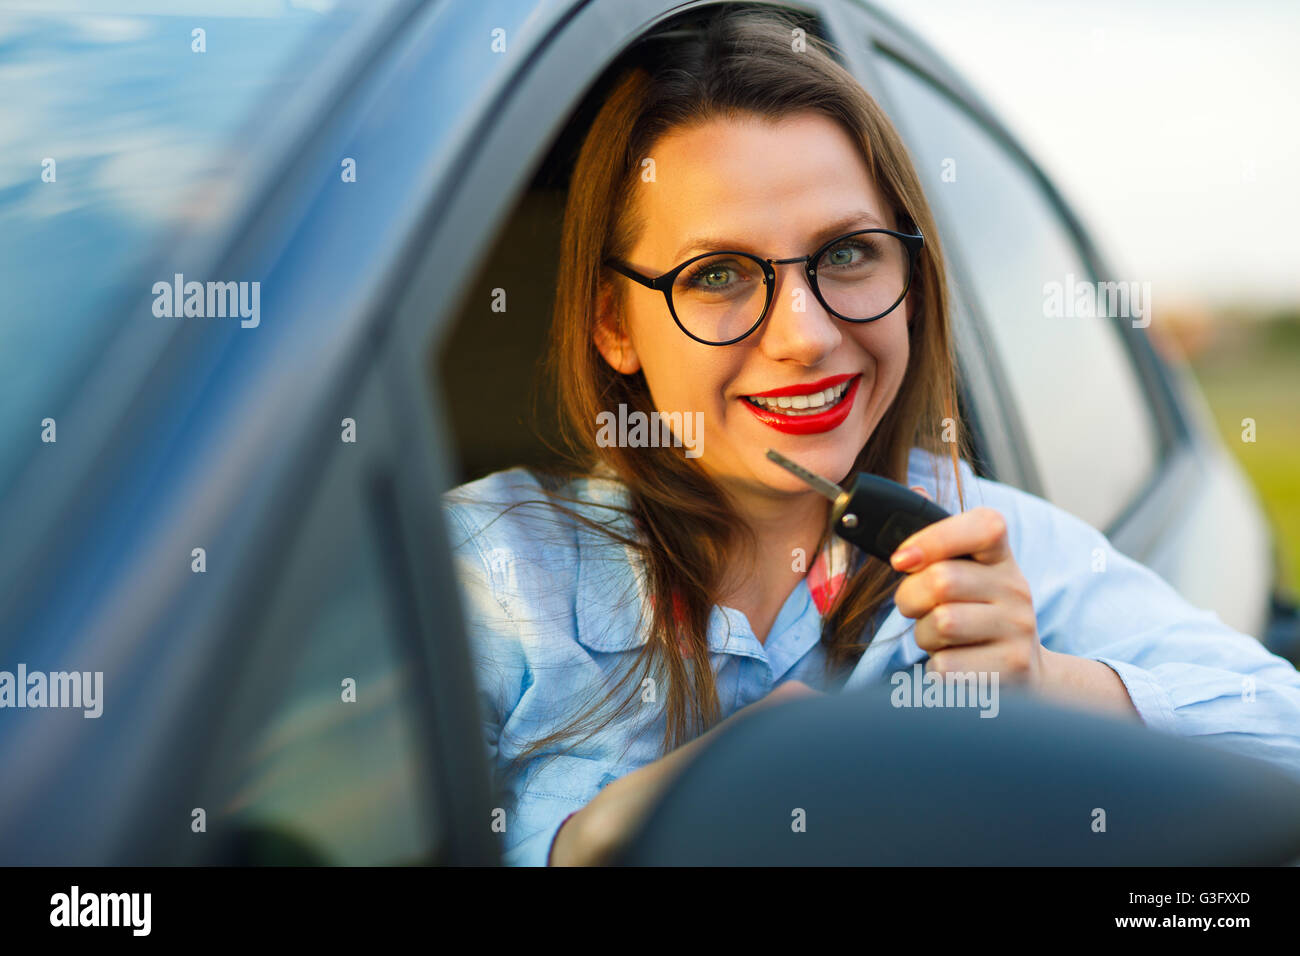 Junge hübsche Frau sitzt in einem Auto mit dem Schlüssel in Hand - Konzept für den Kauf eines Gebrauchtwagens oder einen Mietwagen Stockfoto